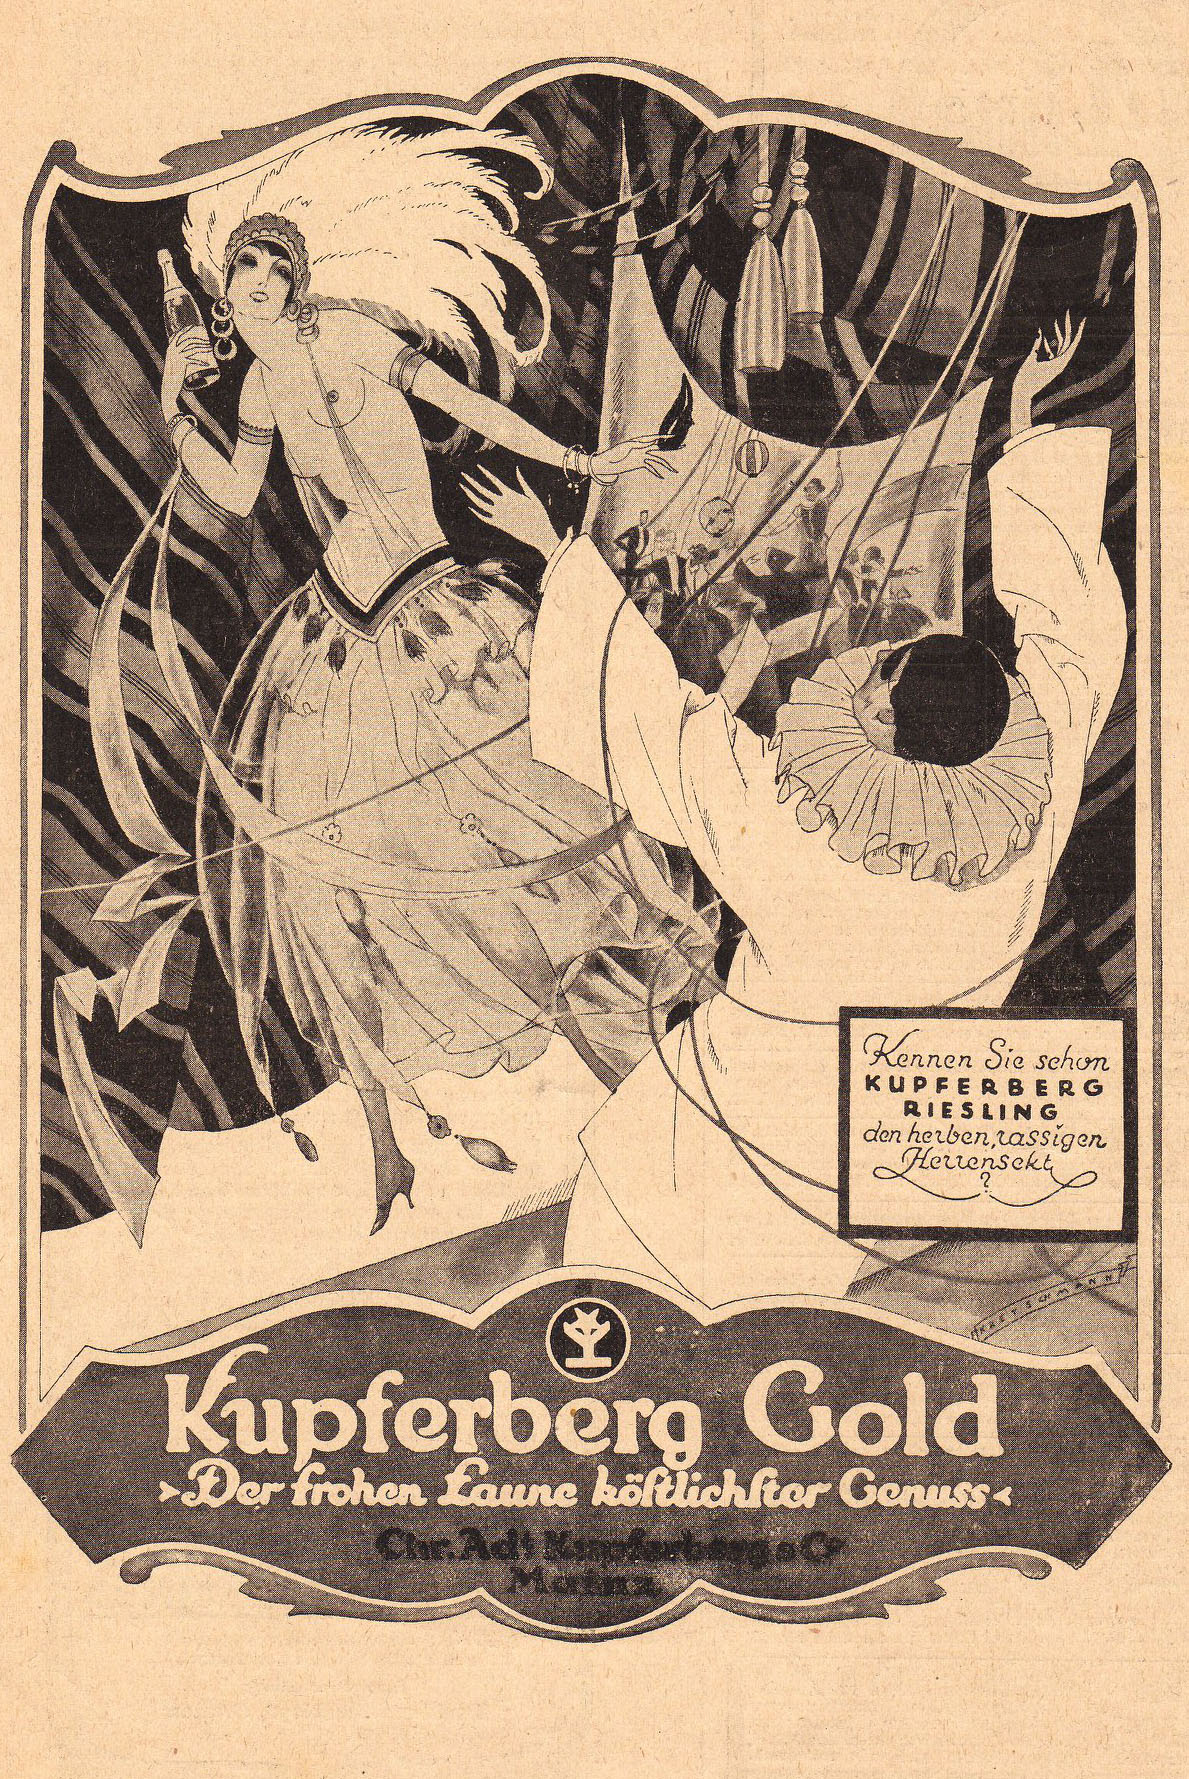 Erotik und Tanz als Kaufanreiz für einen "Herrensekt" im Jahr 1922: Werbeannonce in "Die Woche", 21.10.1922 – Deutsches Tanzarchiv Köln